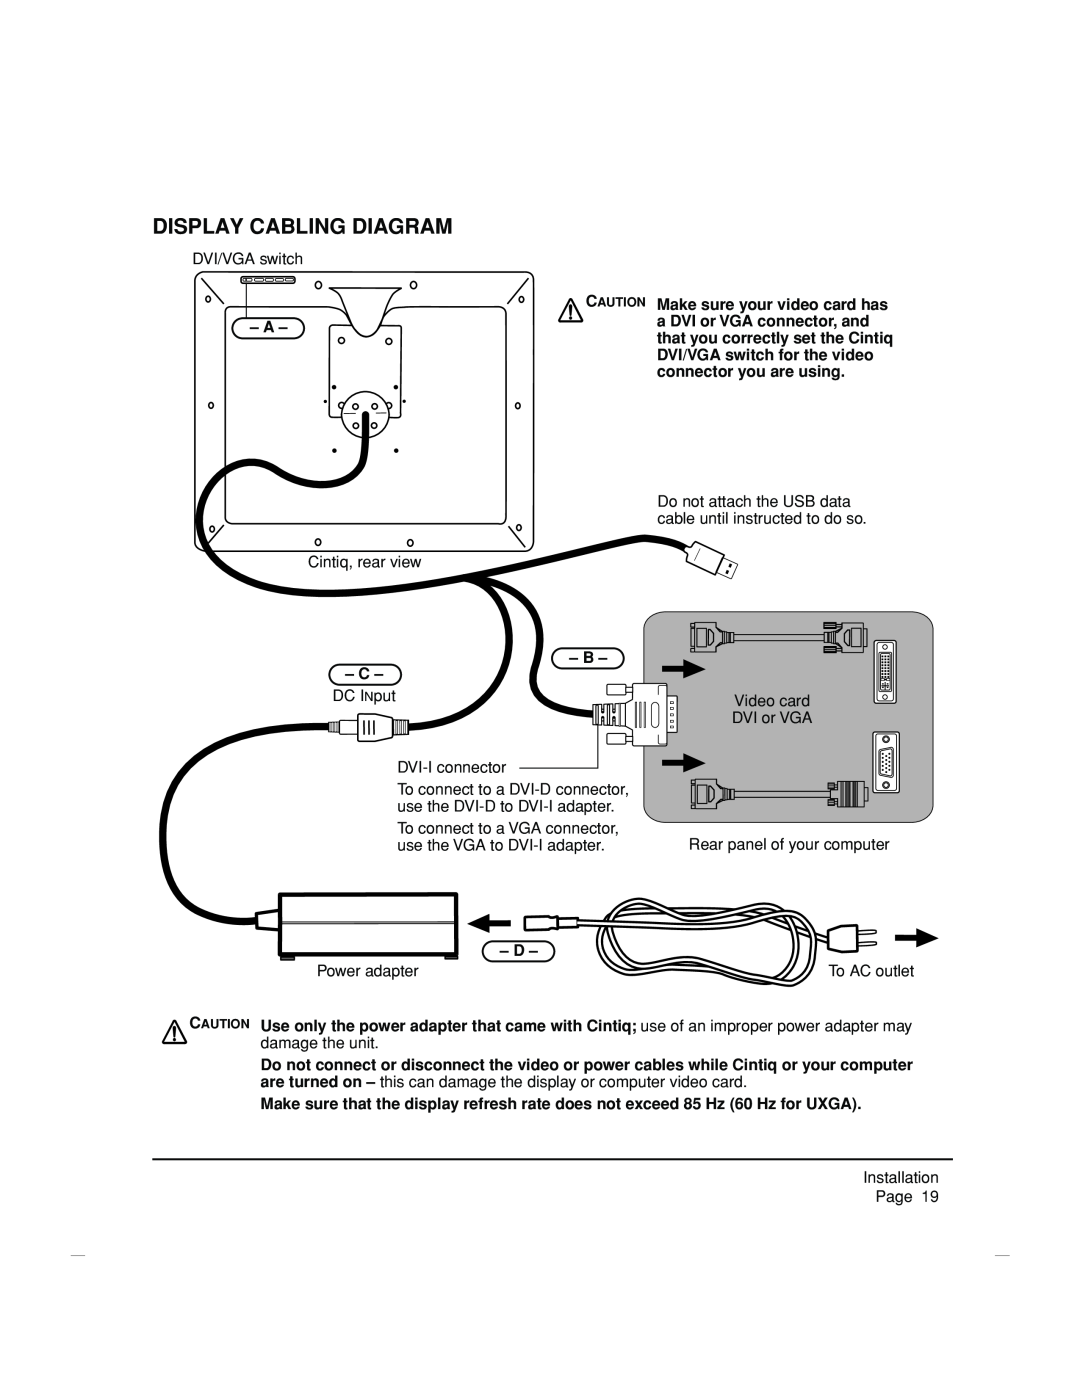 Wacom DTZ-2100D manual Display Cabling Diagram 